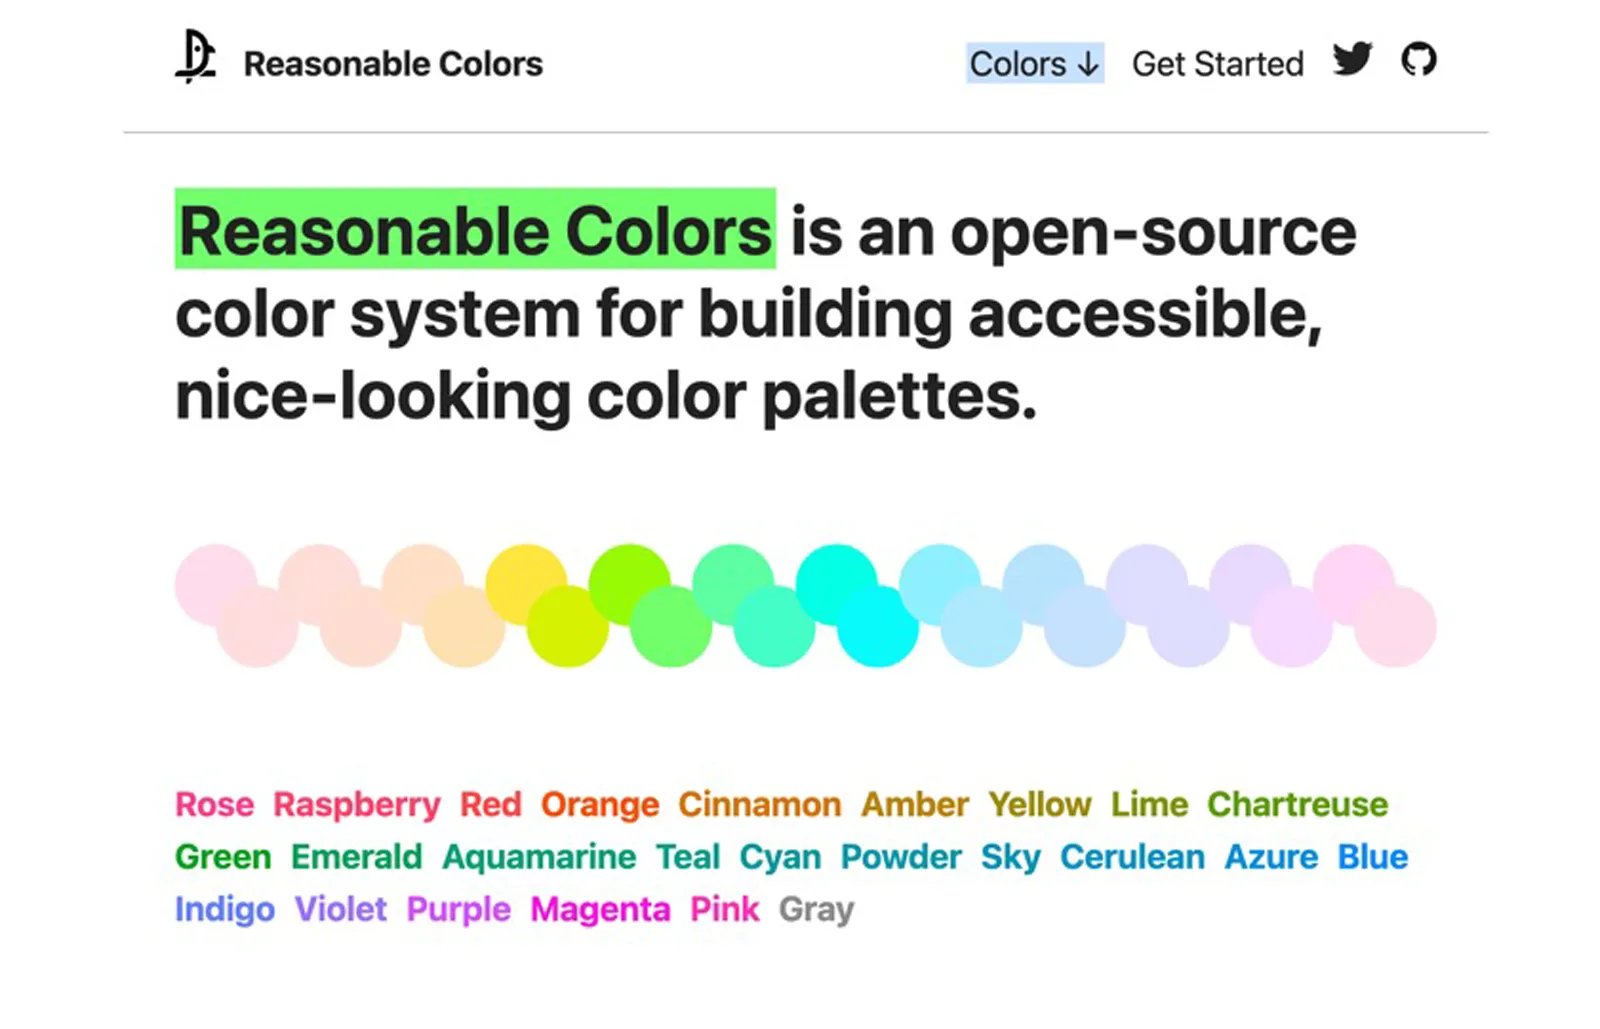 Reasonable Colors